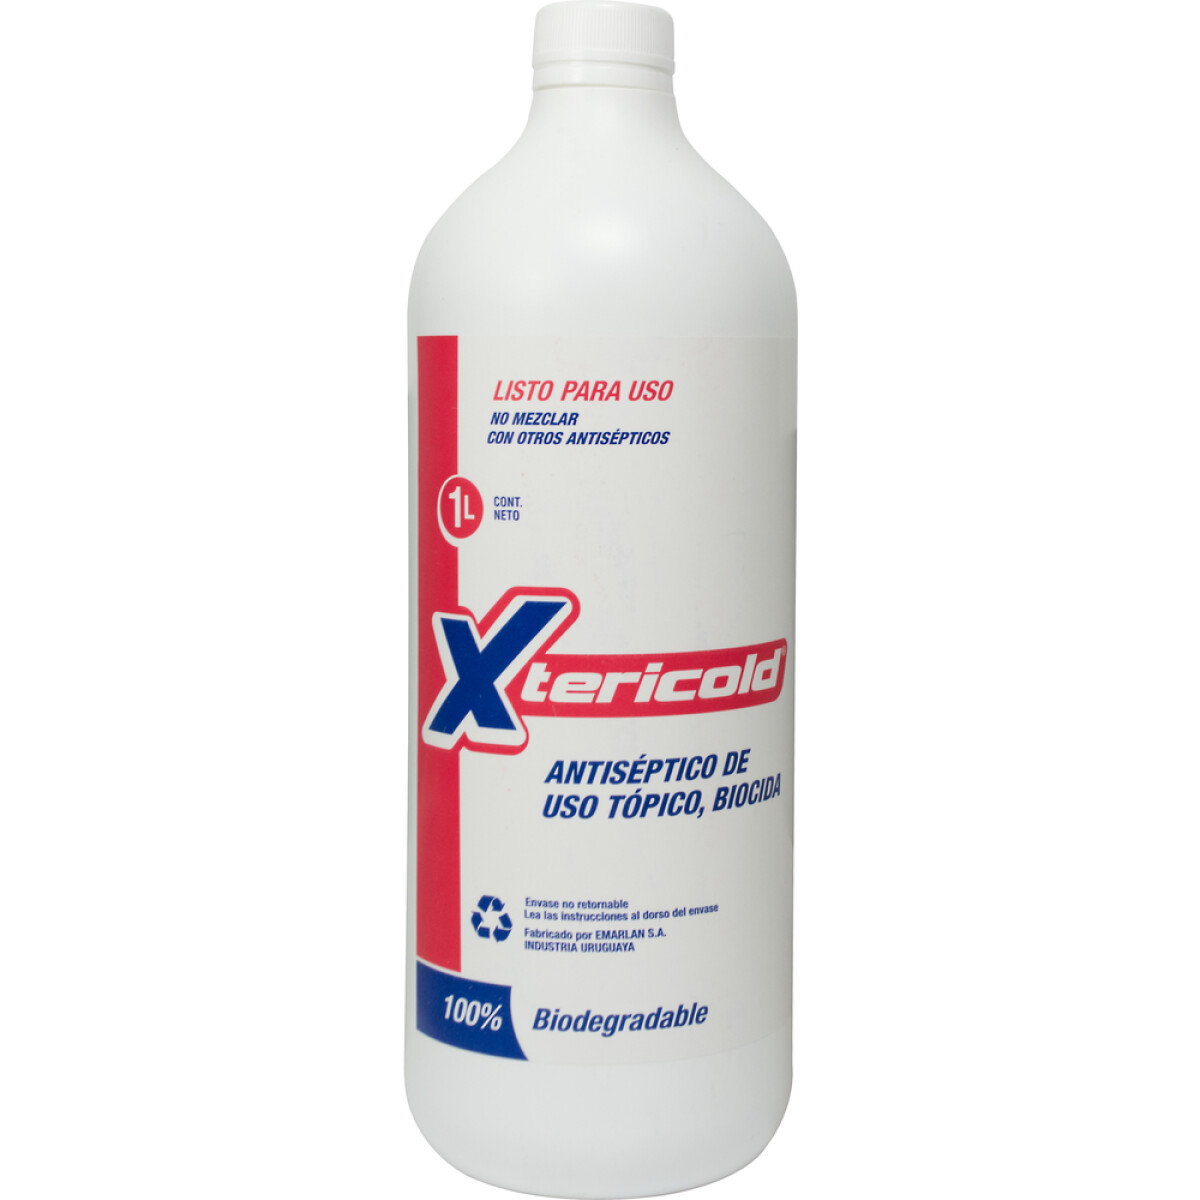 Desinfectante XTERICOLD - 1 L 